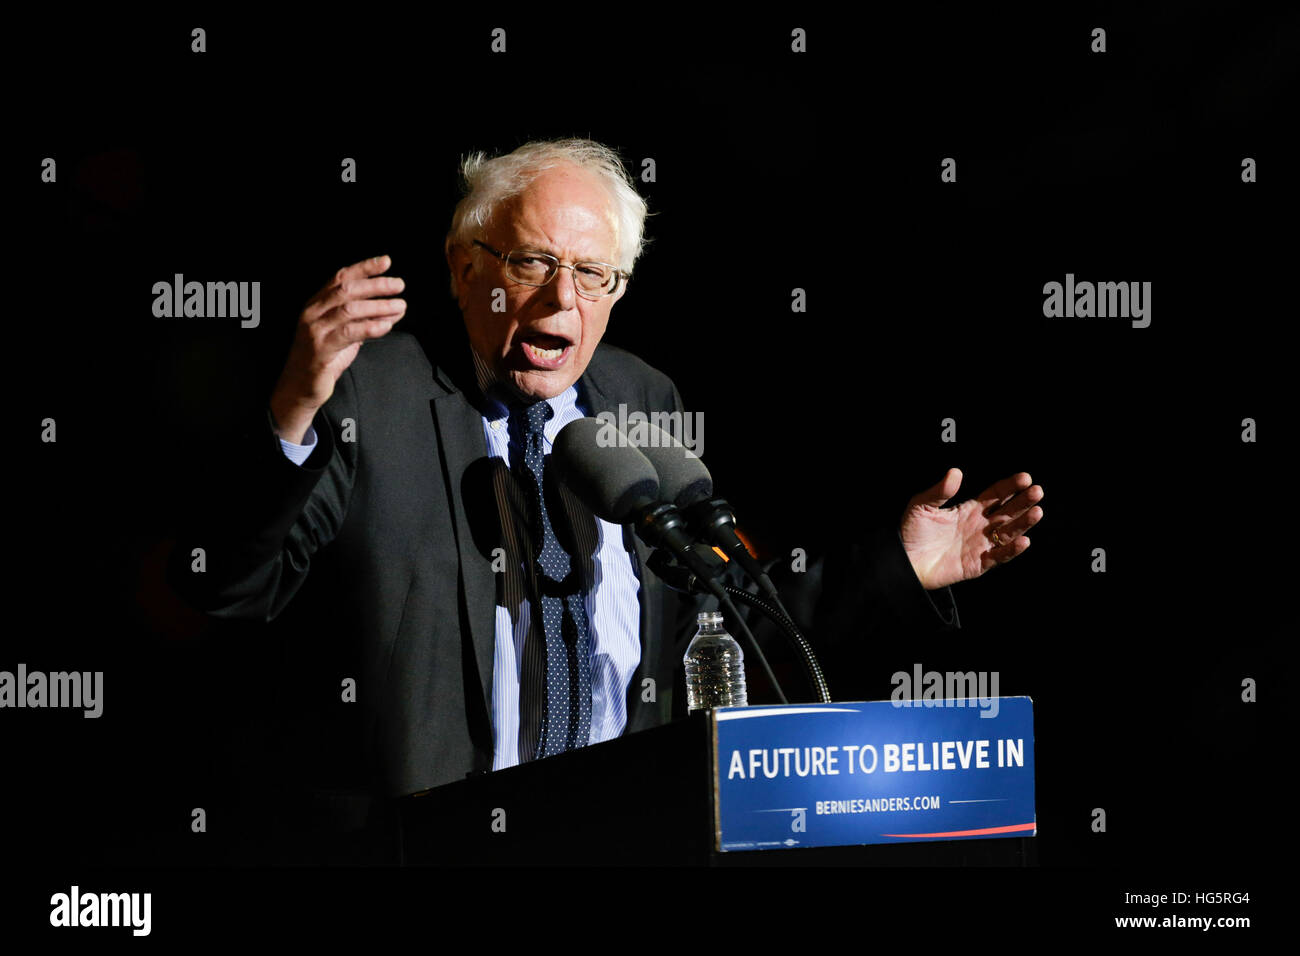 El nominado demócrata Bernie Sanders habla durante un mitin de campaña, en St. Mary's Park el 31 de marzo de 2016 en el Bronx, Nueva York. Foto de stock